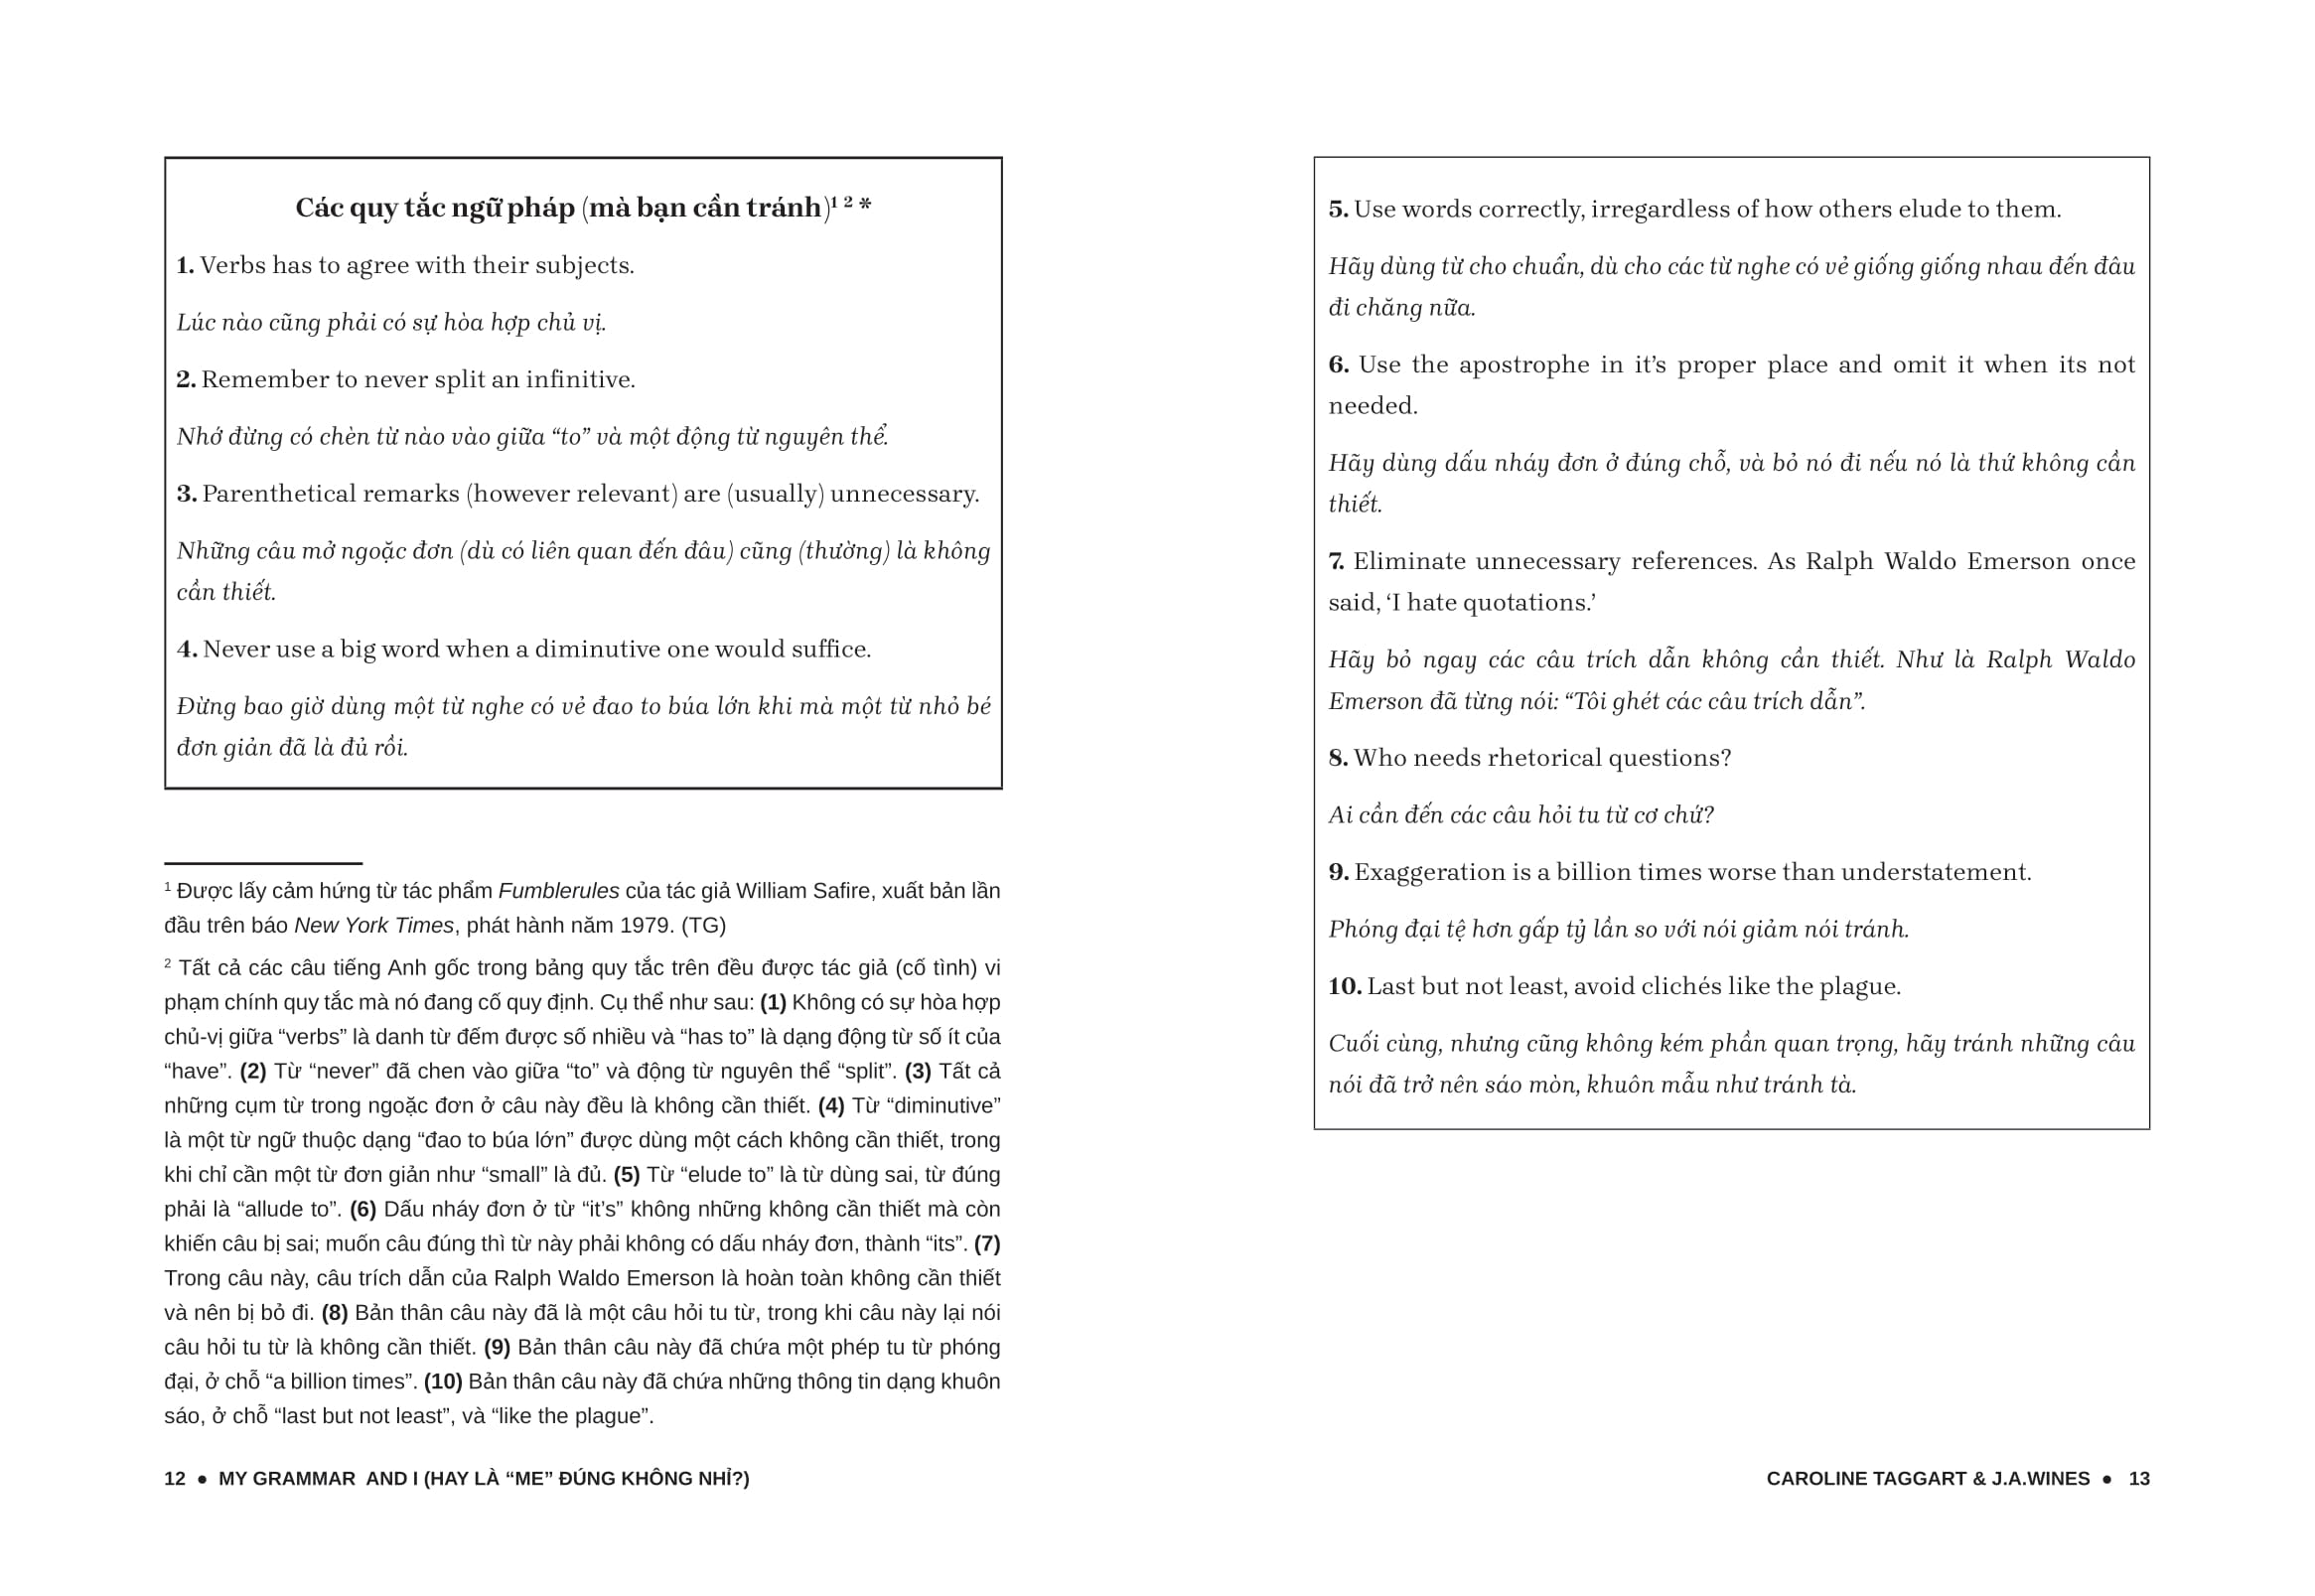 My Grammar And I - Lý Thuyết PDF